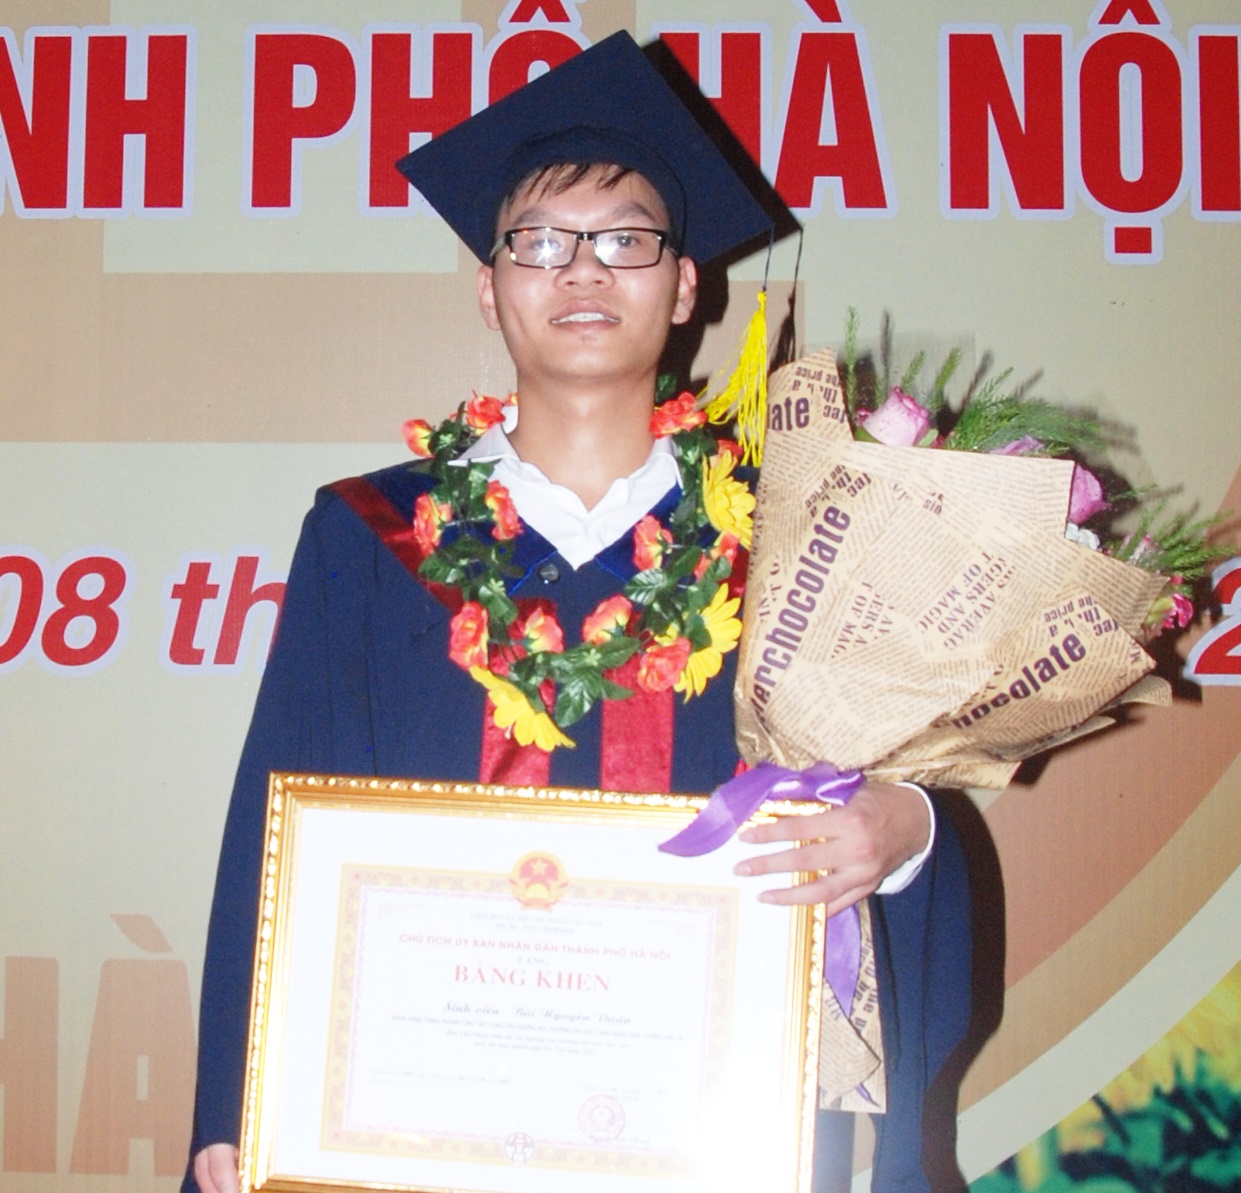 Phỏng vấn tân kỹ sư Bùi Nguyên Duân - Thủ khoa được vinh danh tại Lễ Tuyên dương Thủ khoa xuất sắc tốt nghiệp các trường Đại học, Học viện trên địa bàn thành phố Hà Nội năm 2017